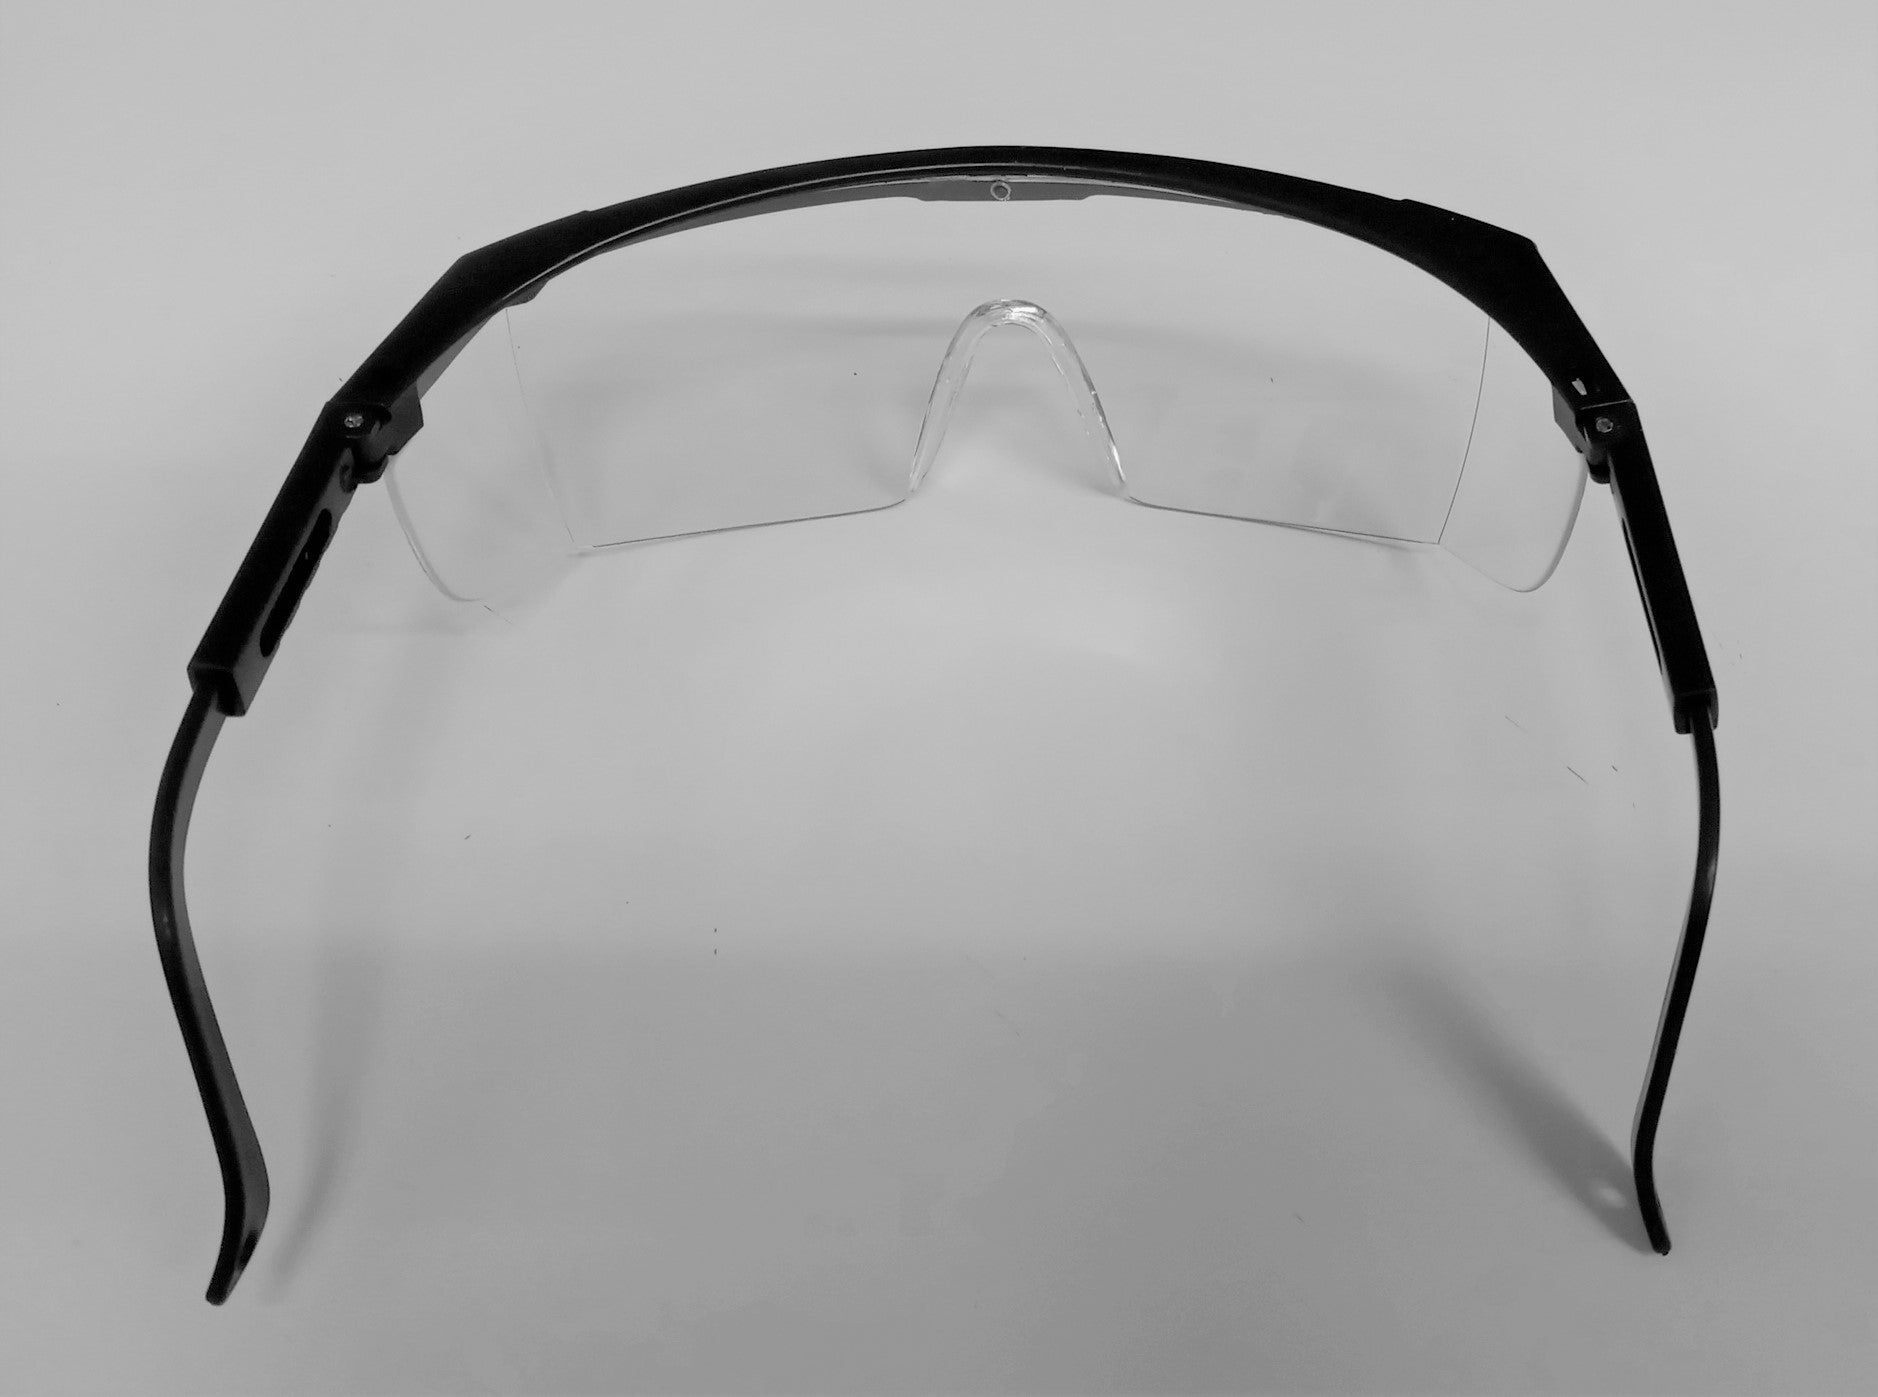 Order-Go Protection Glasses Clear Lens Black Frame 12pcs